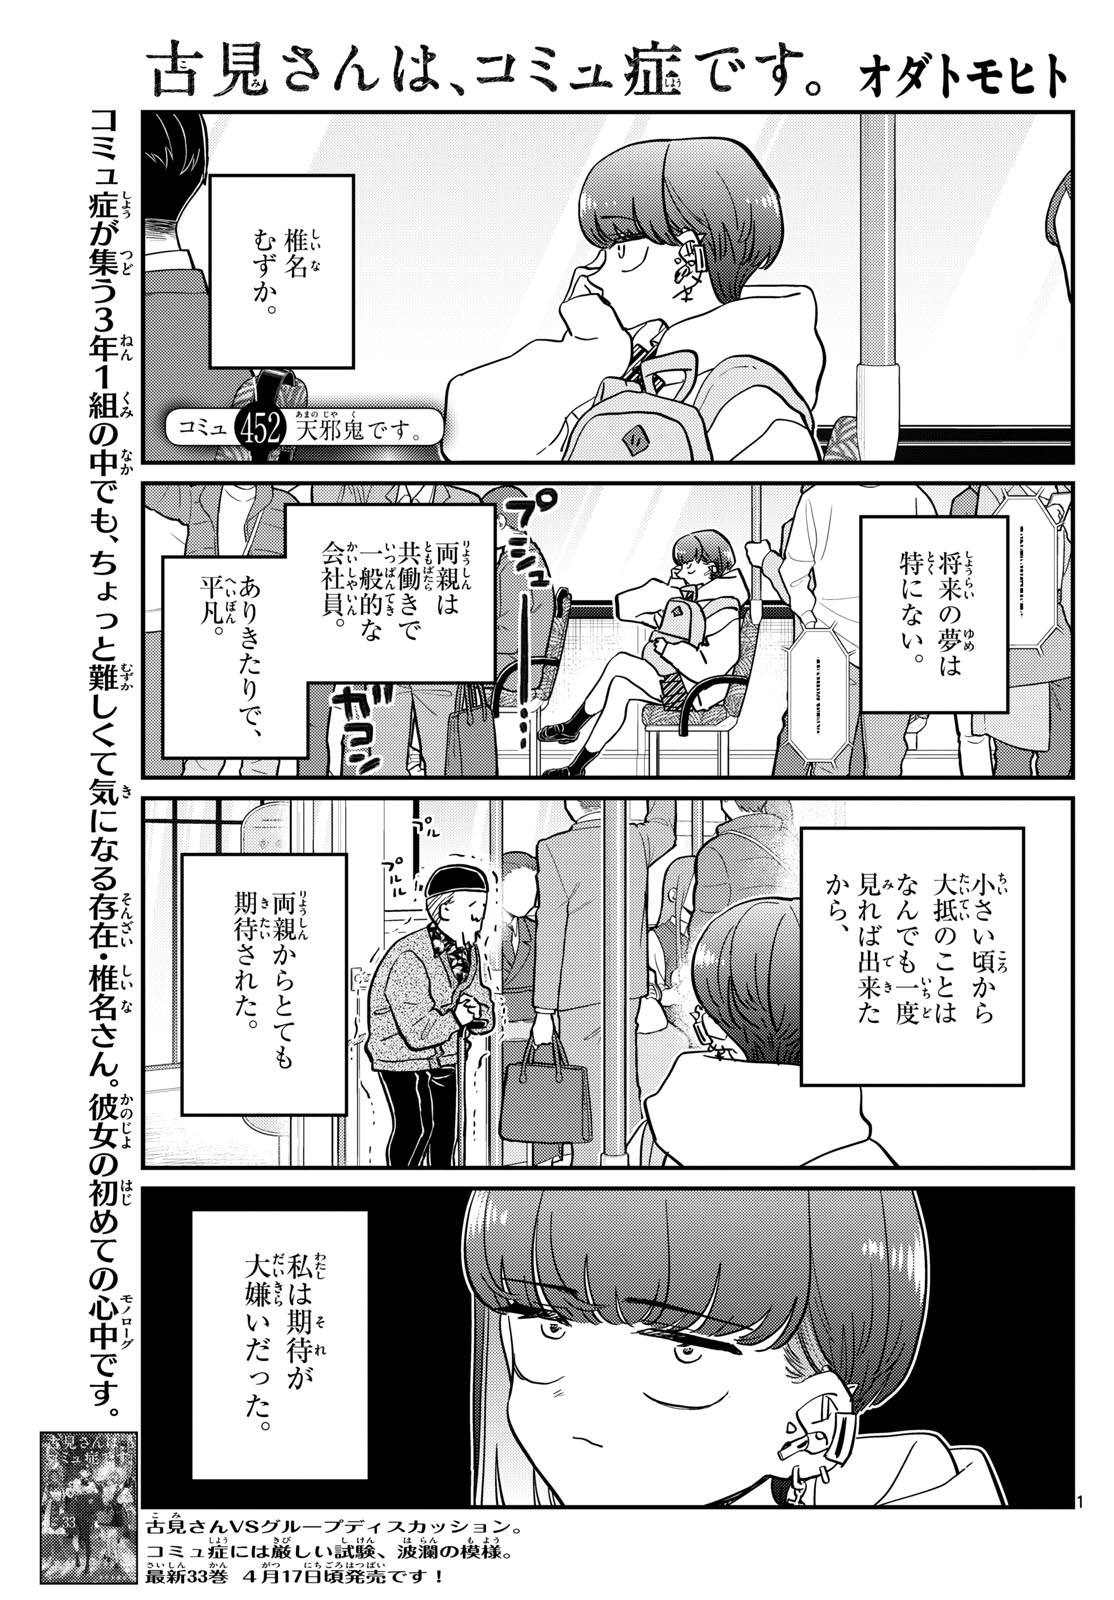 Komi-san wa Komyushou Desu - Chapter 452 - Page 1